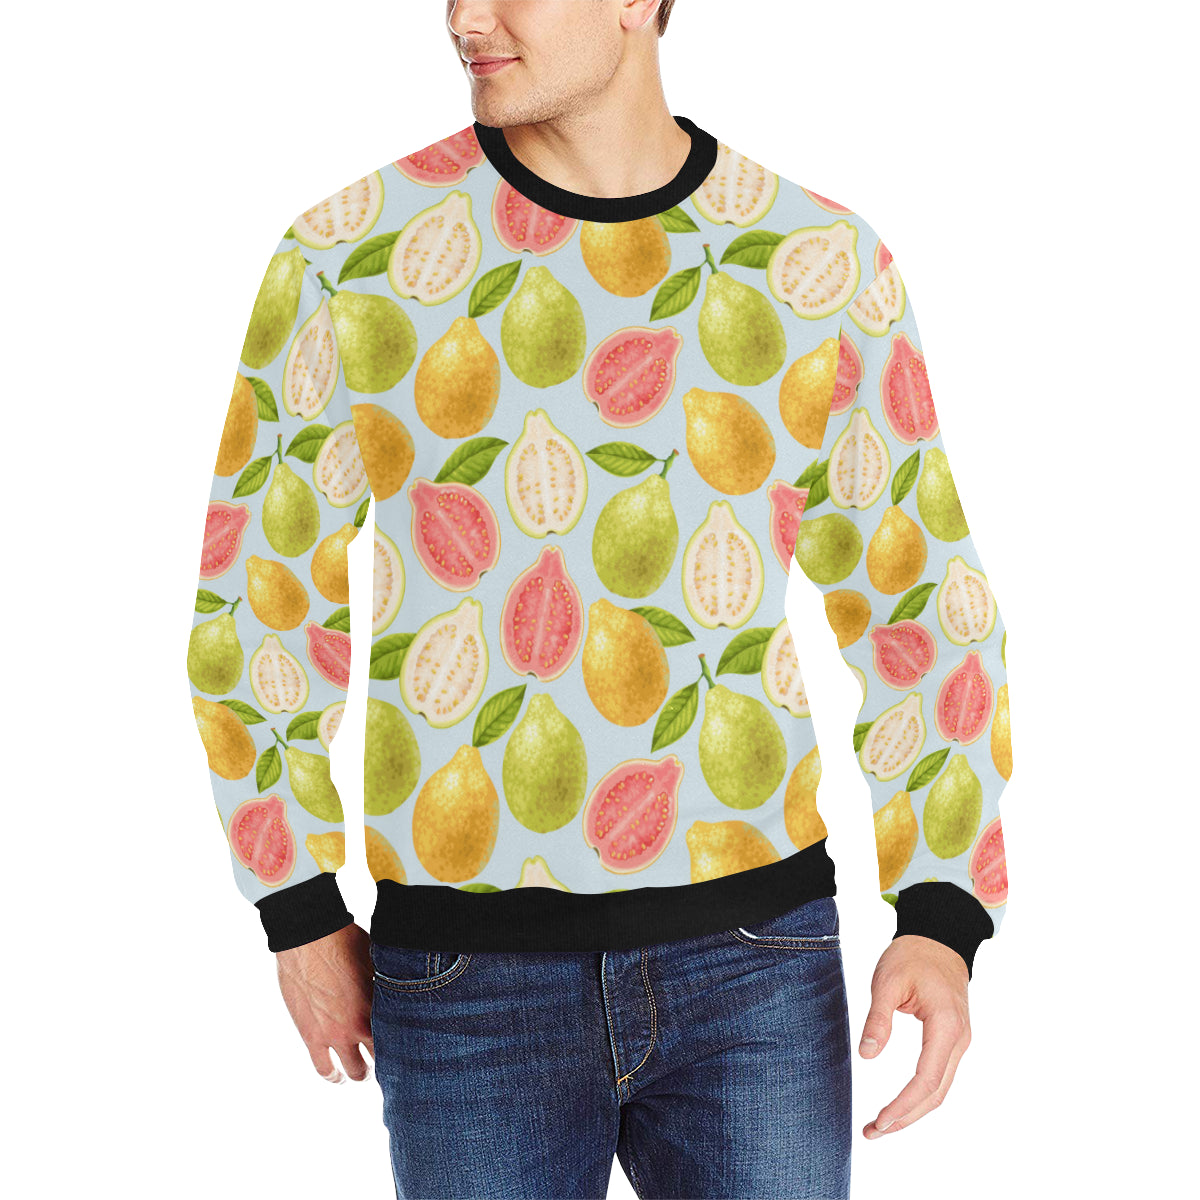 Guava design pattern Men’s Crew Neck Sweatshirt